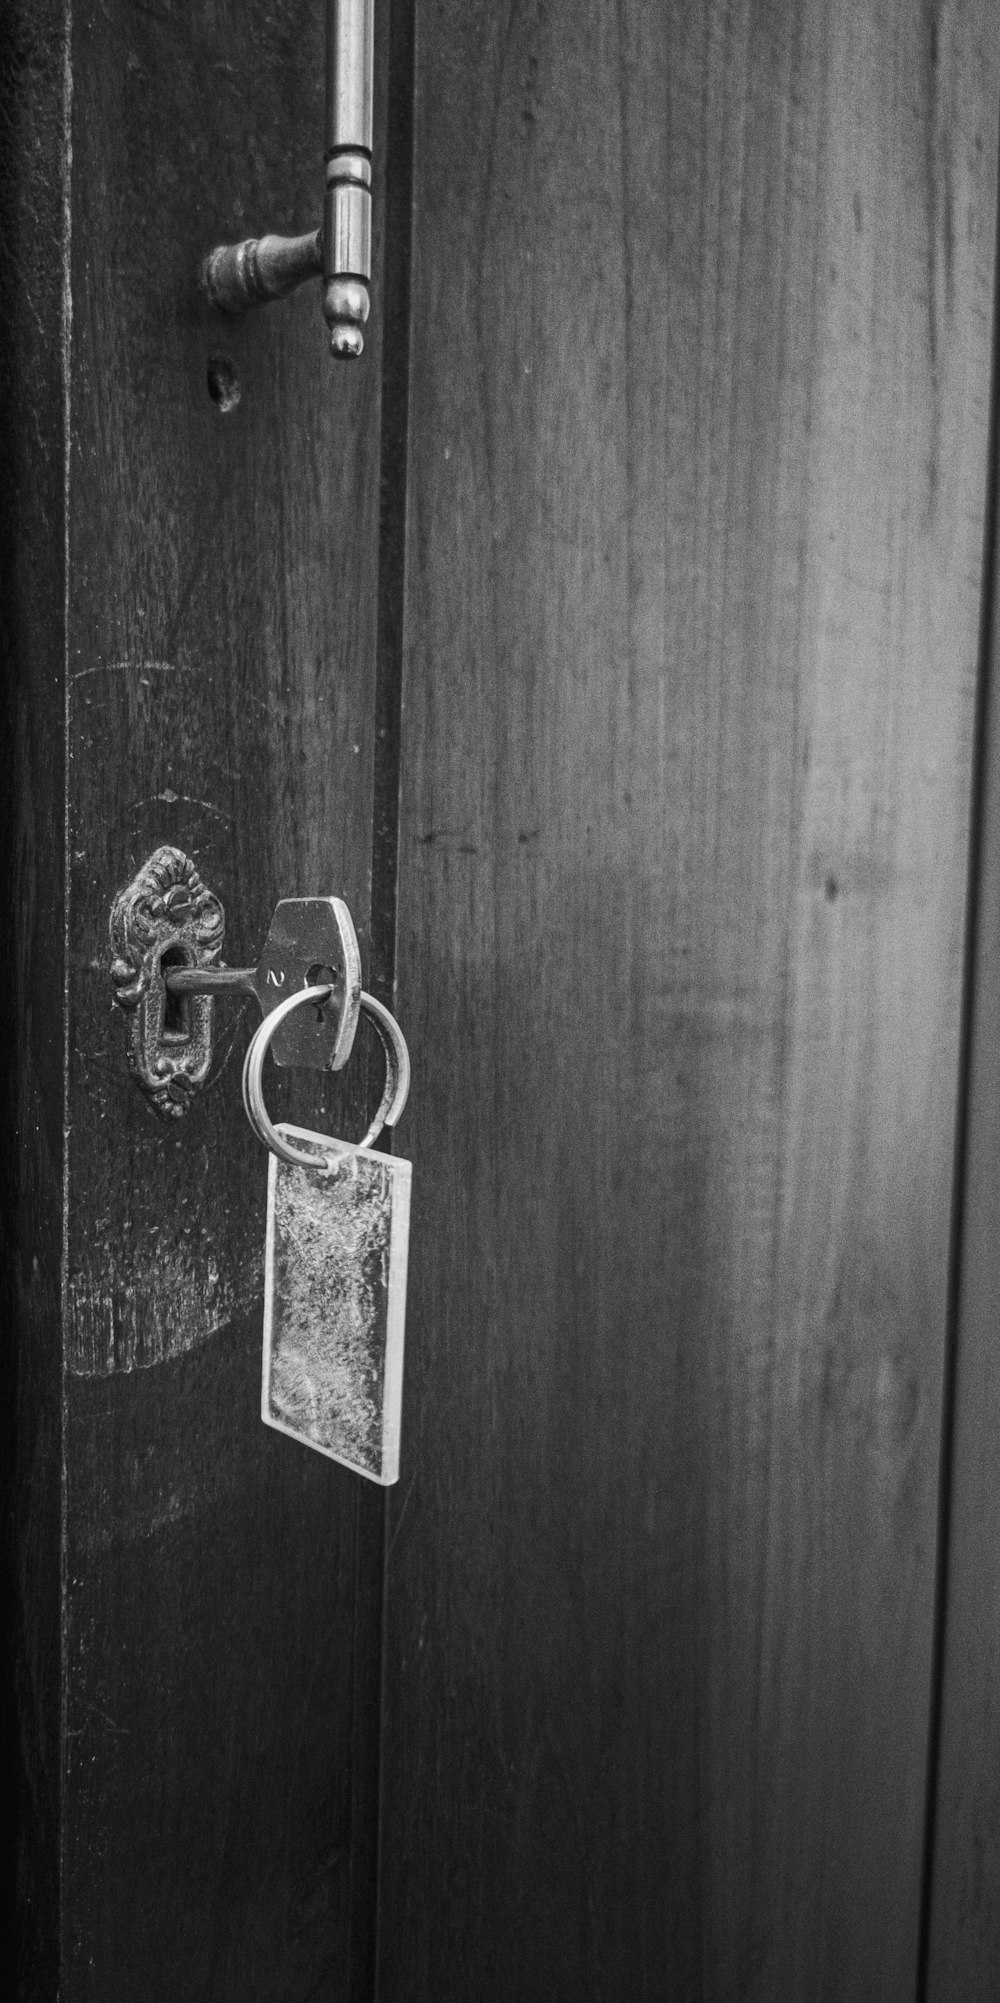 gray padlock on wooden door